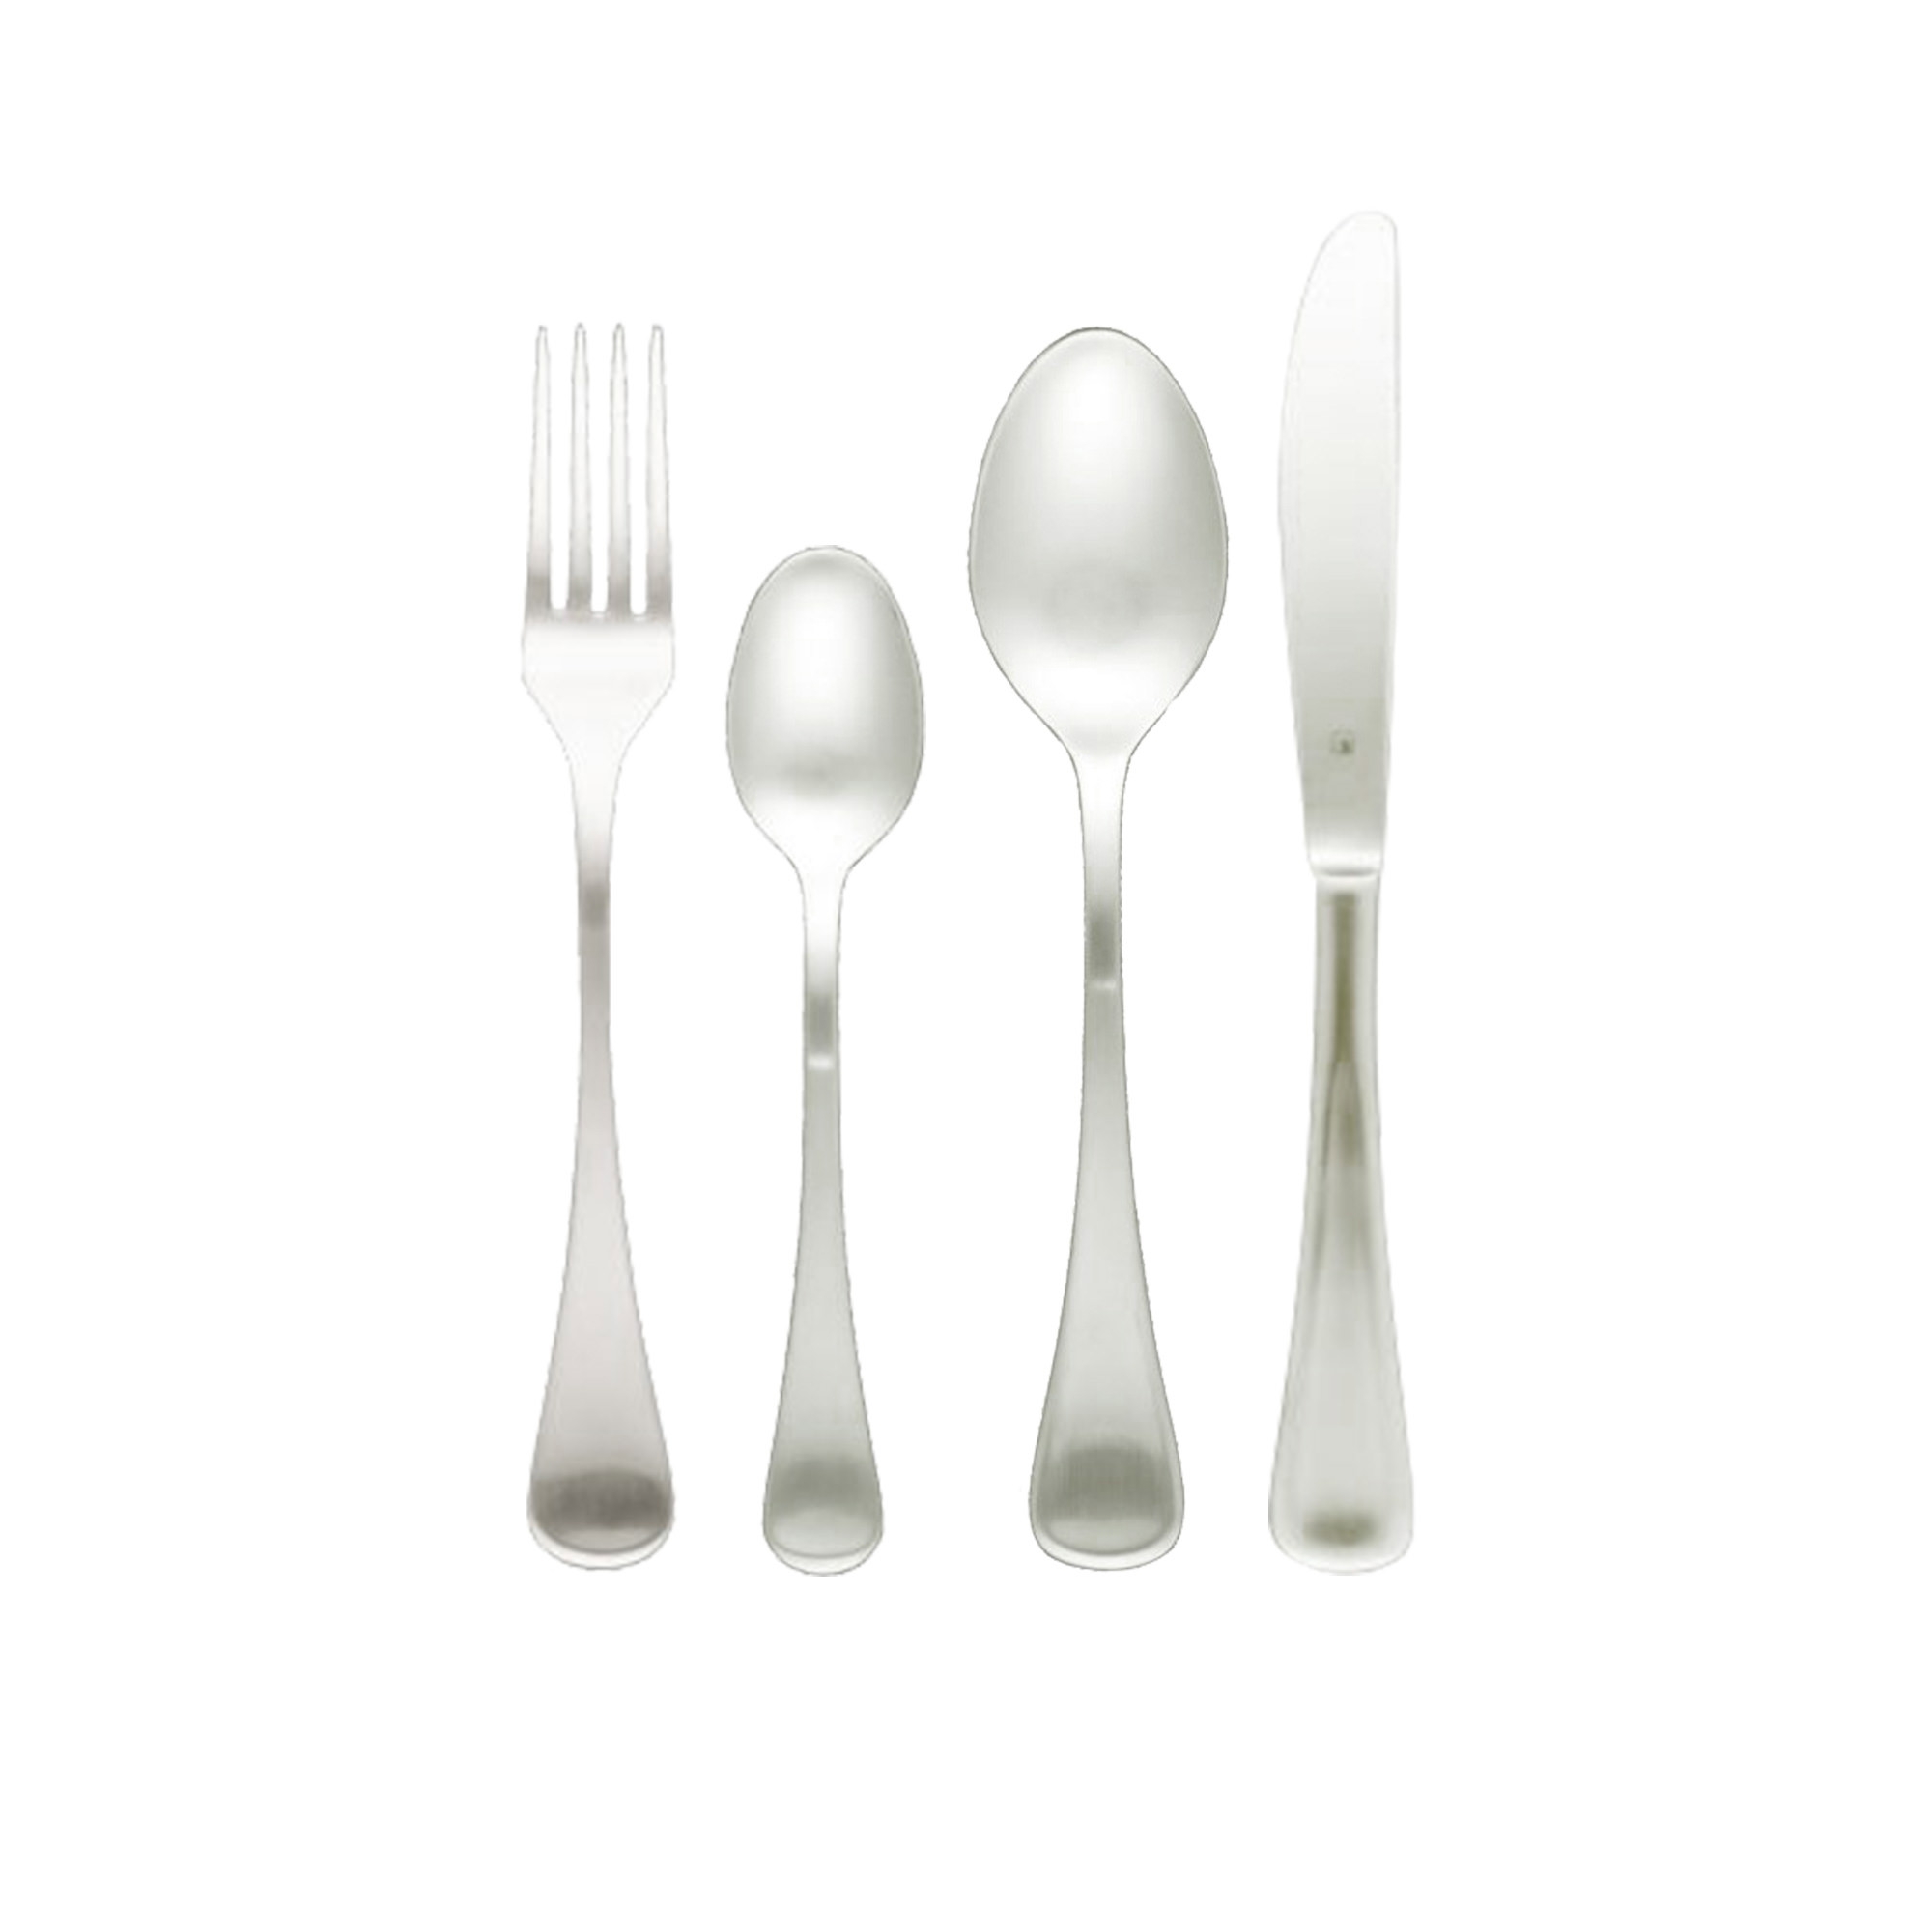 Tablekraft Elite Cutlery Set 24pc Image 1